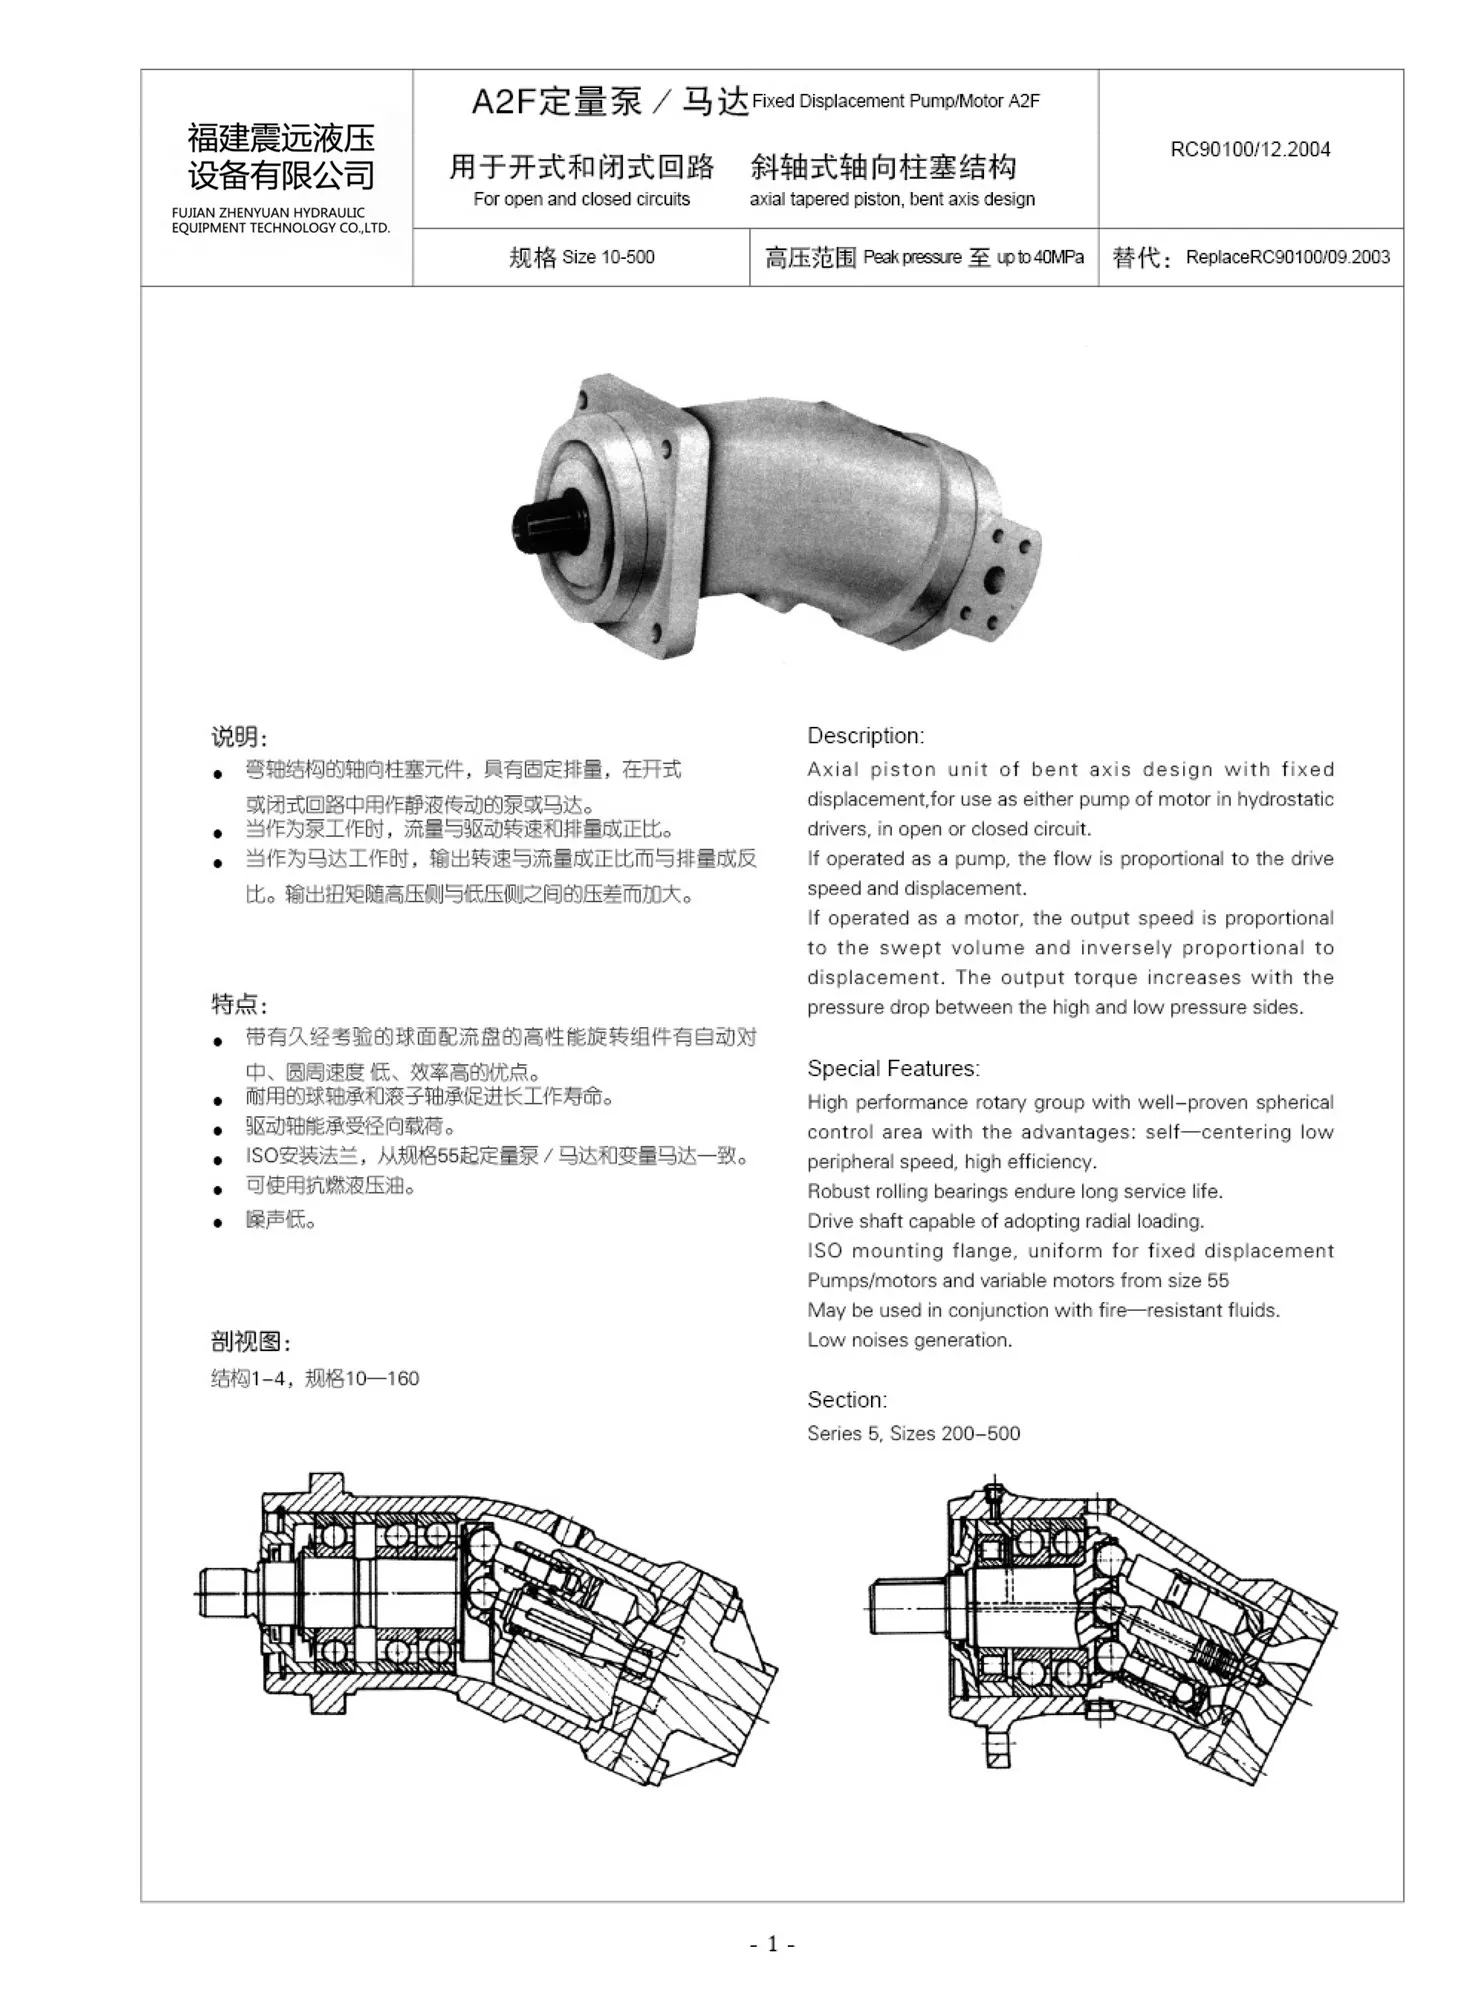 Rexroth A2F28 hydraulic fixed plug-in piston motor hydraulic pump Bent Axis Piston Motor A2F28R2P3 A2F28R3P4 A2F28W3P8